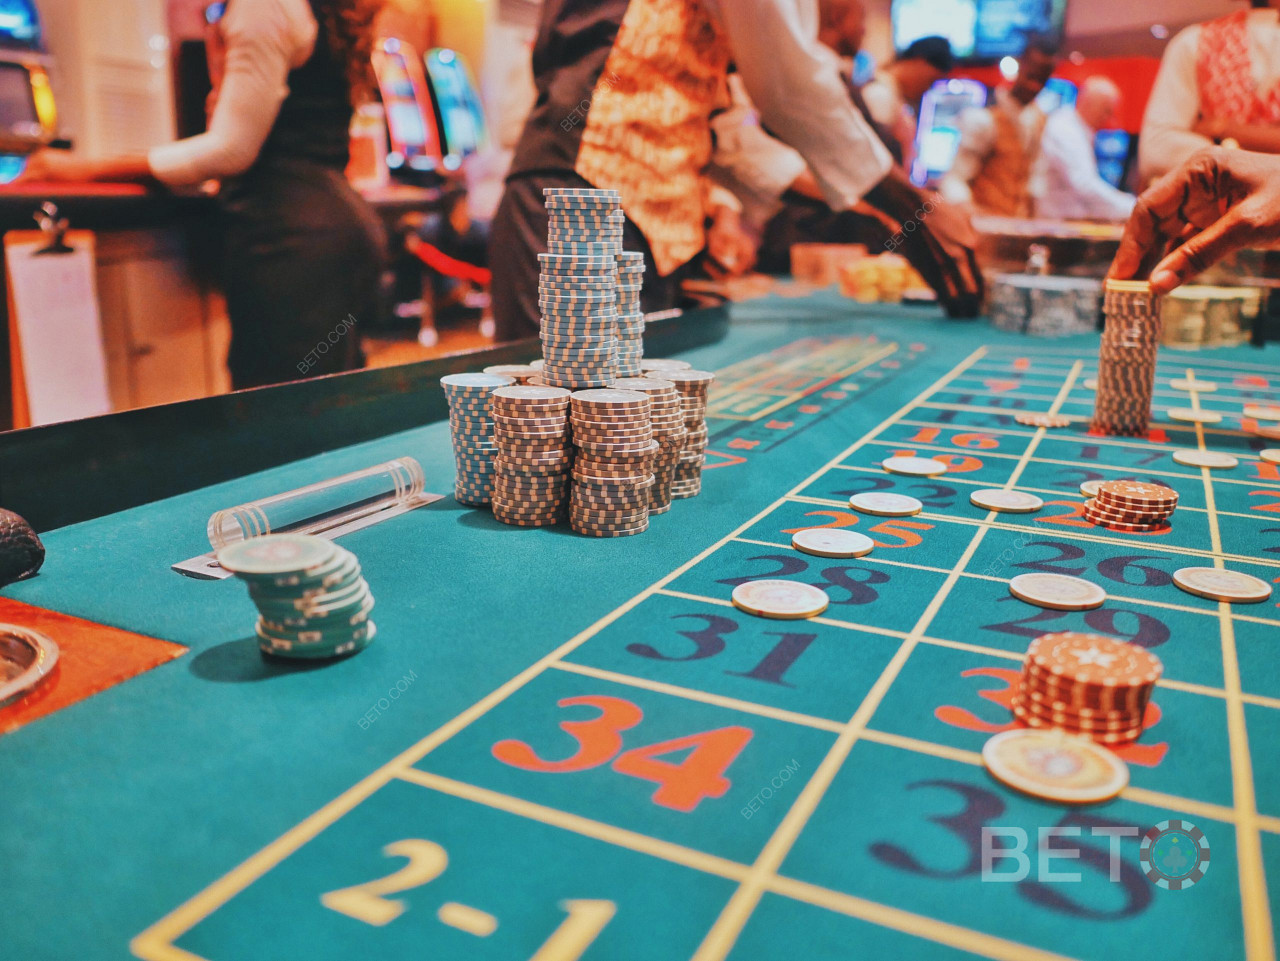 888 ist einer der besten Casino-Betreiber auf dem Markt. Spielen Sie Blackjack und andere Spiele.